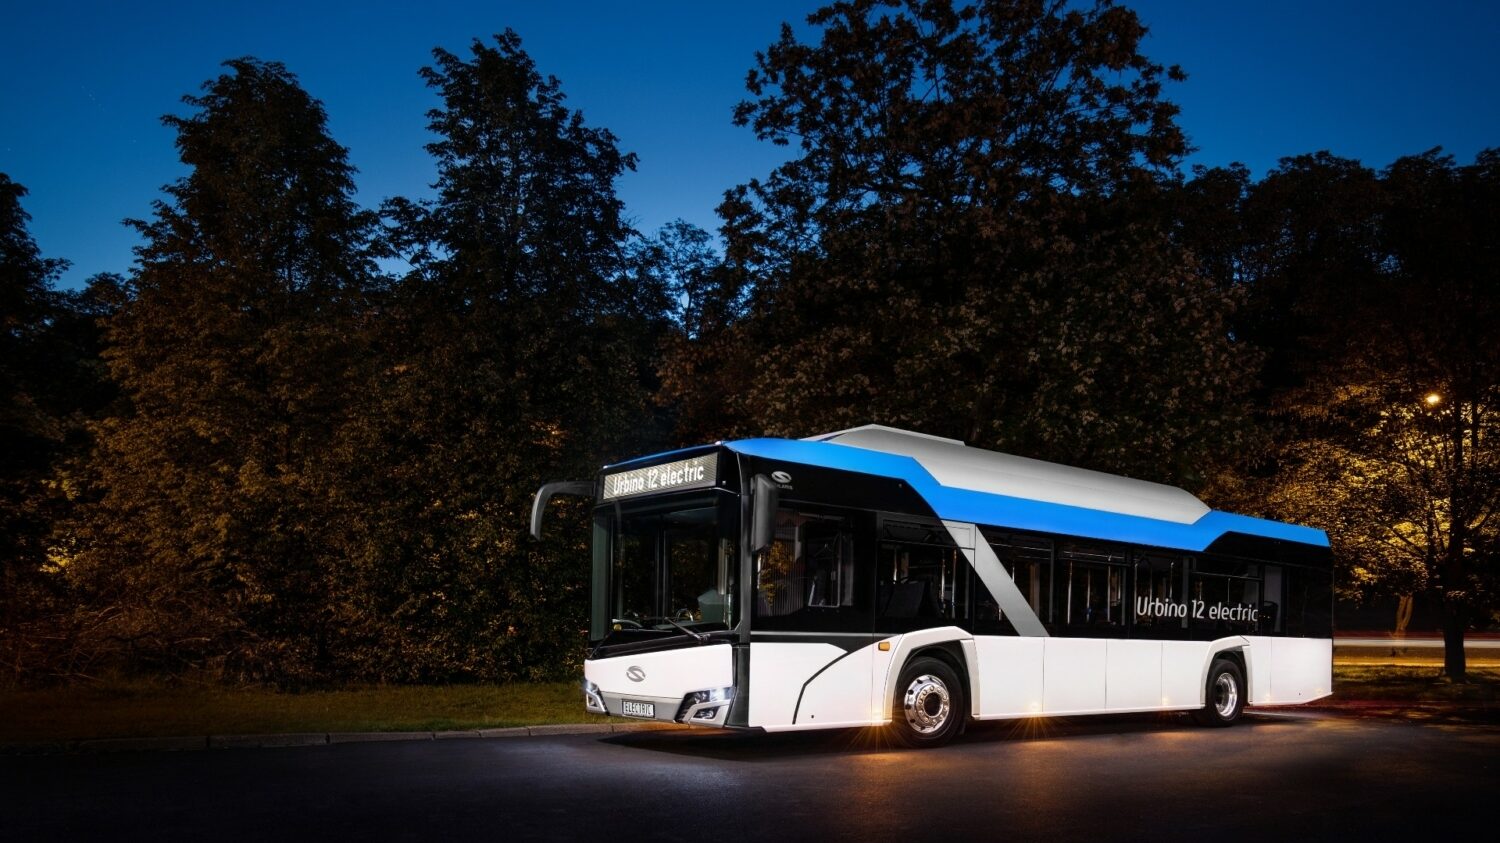 Urbino 12 electric od Solarisu na propagační fotce výrobce. (foto: Solaris Bus & Coach)